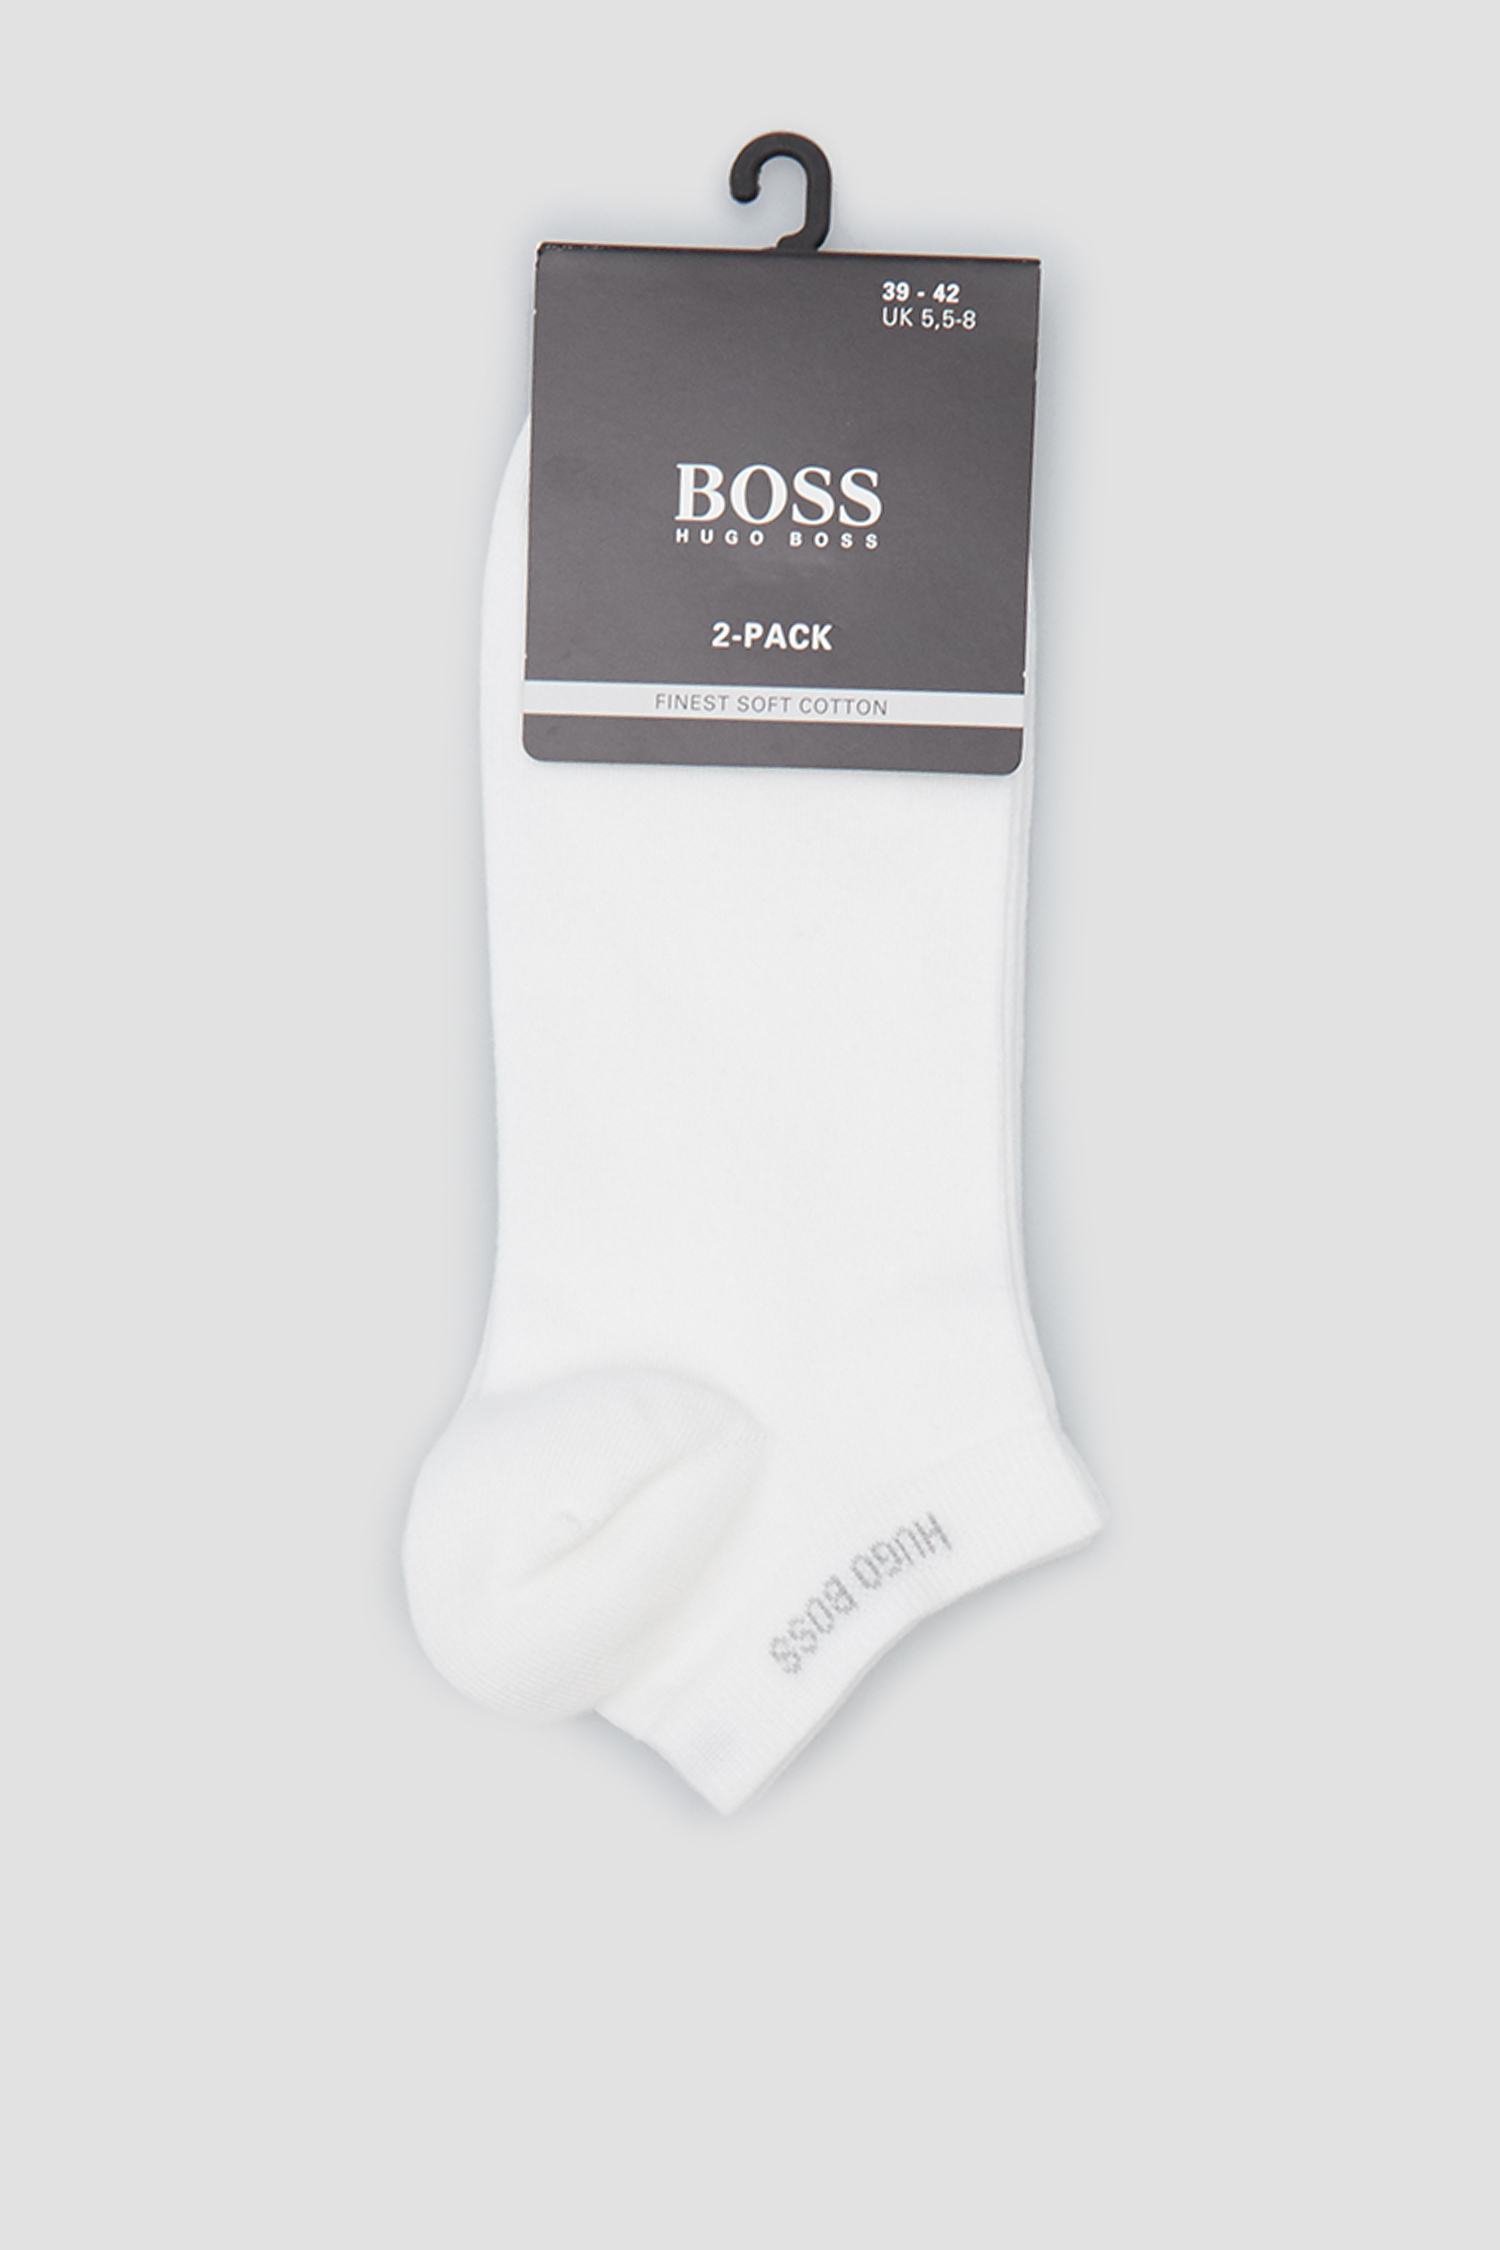 Чоловічі білі шкарпетки (2 пари) 1